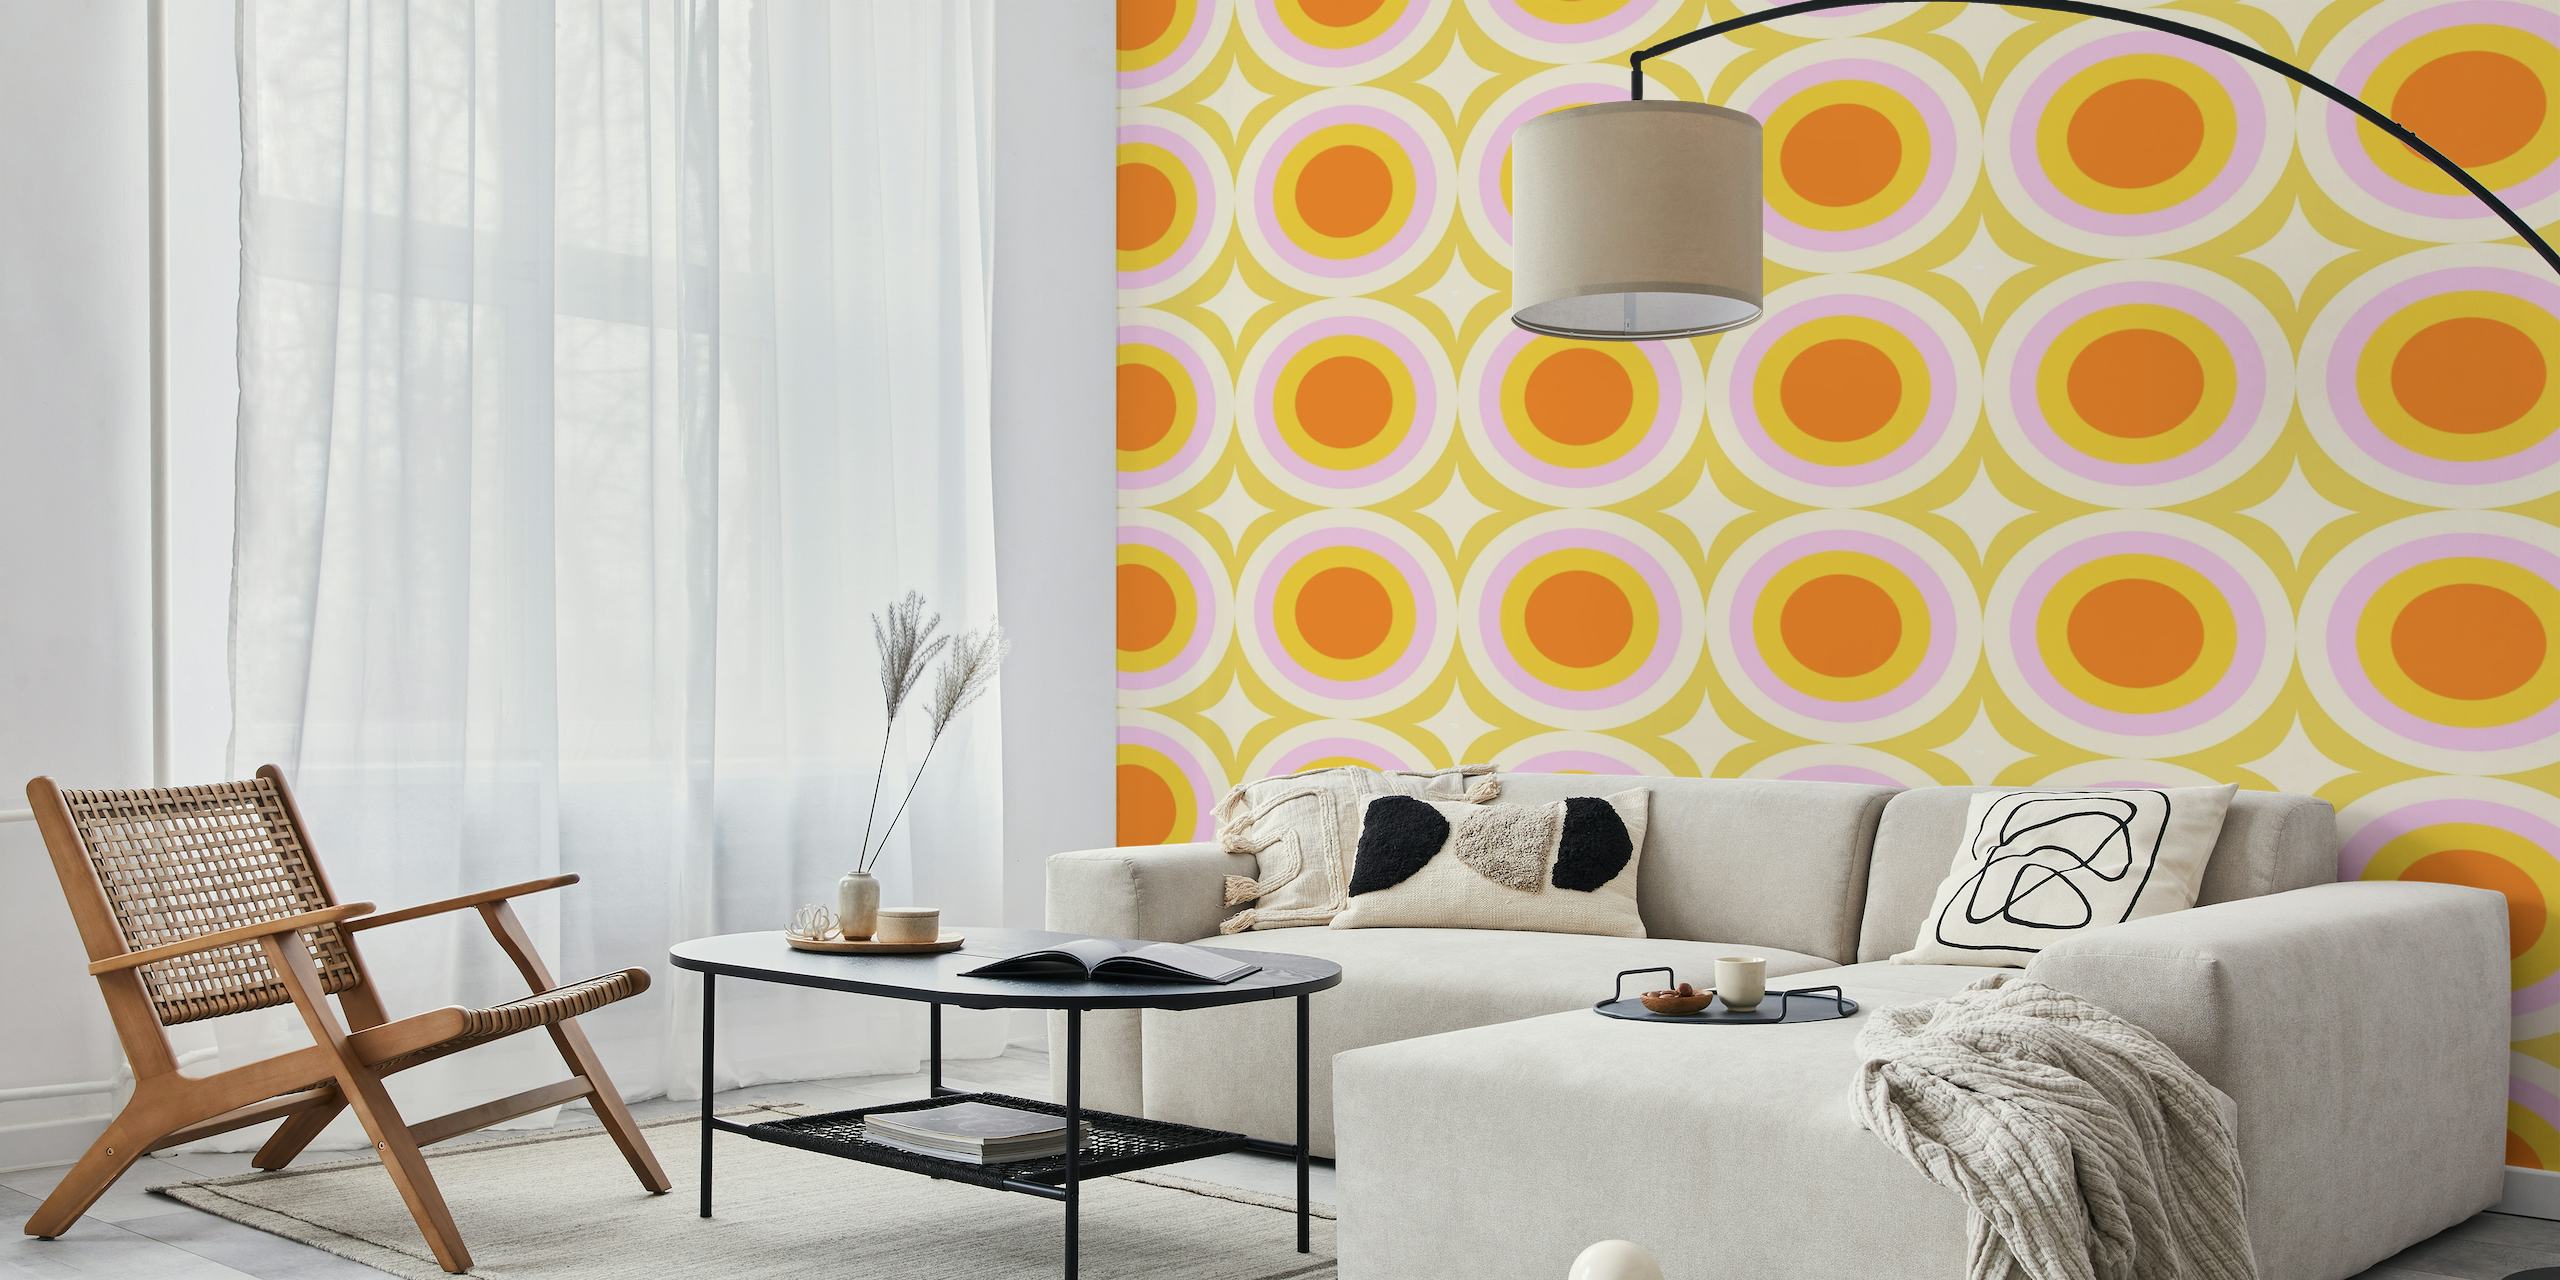 Groovy Dots Sage muurschildering met oranje en witte cirkelvormige patronen op een lichtgroene achtergrond